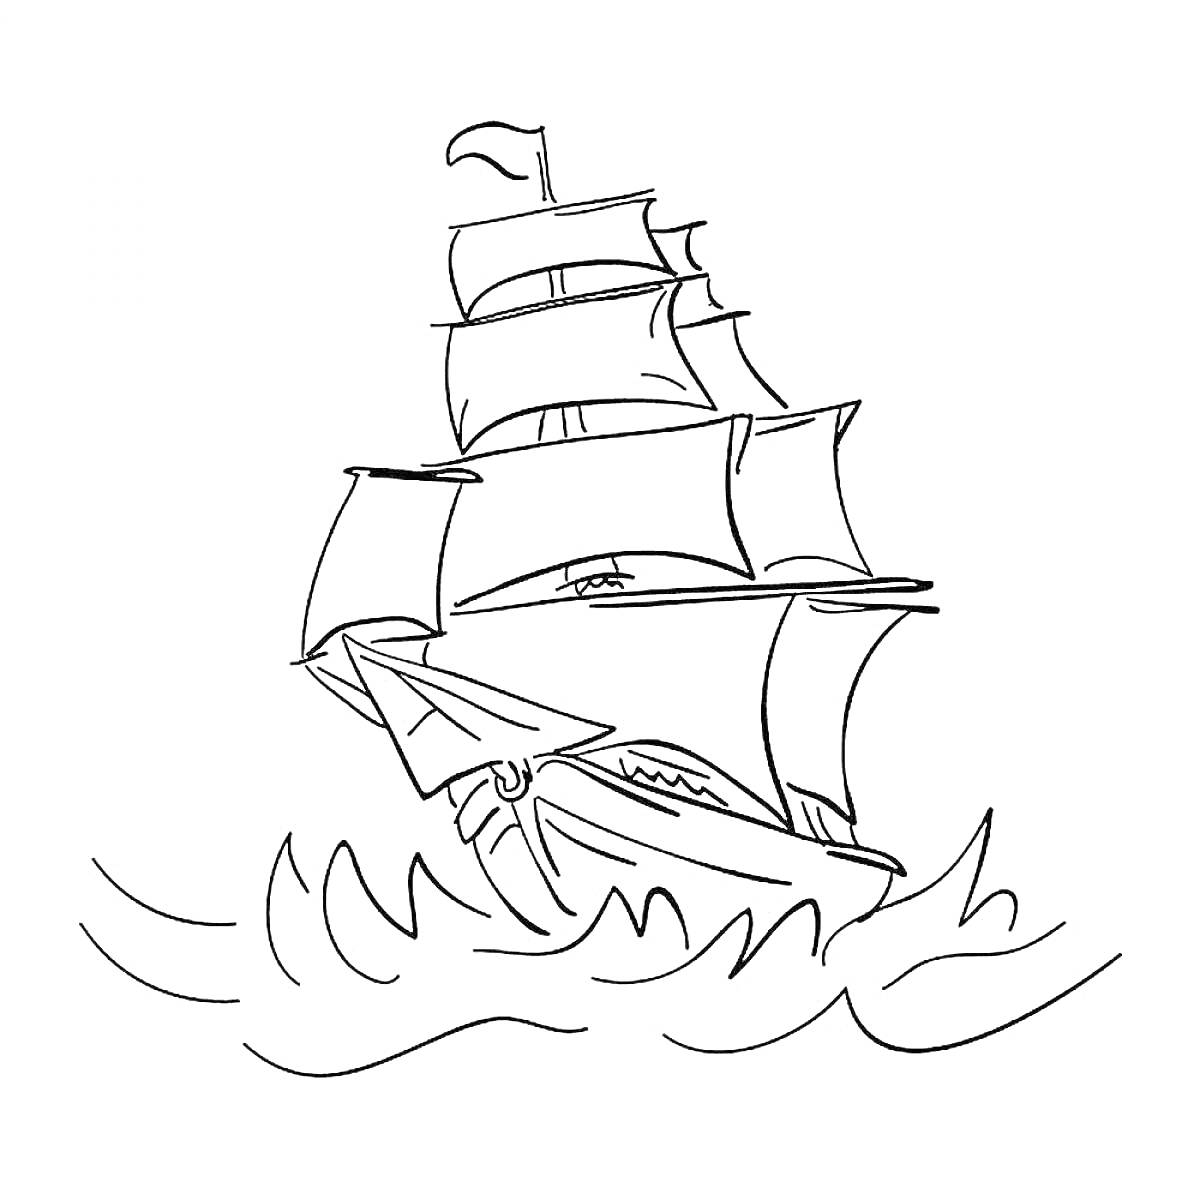 РаскраскаПарусник с флагом на мачте, плывущий по волнам